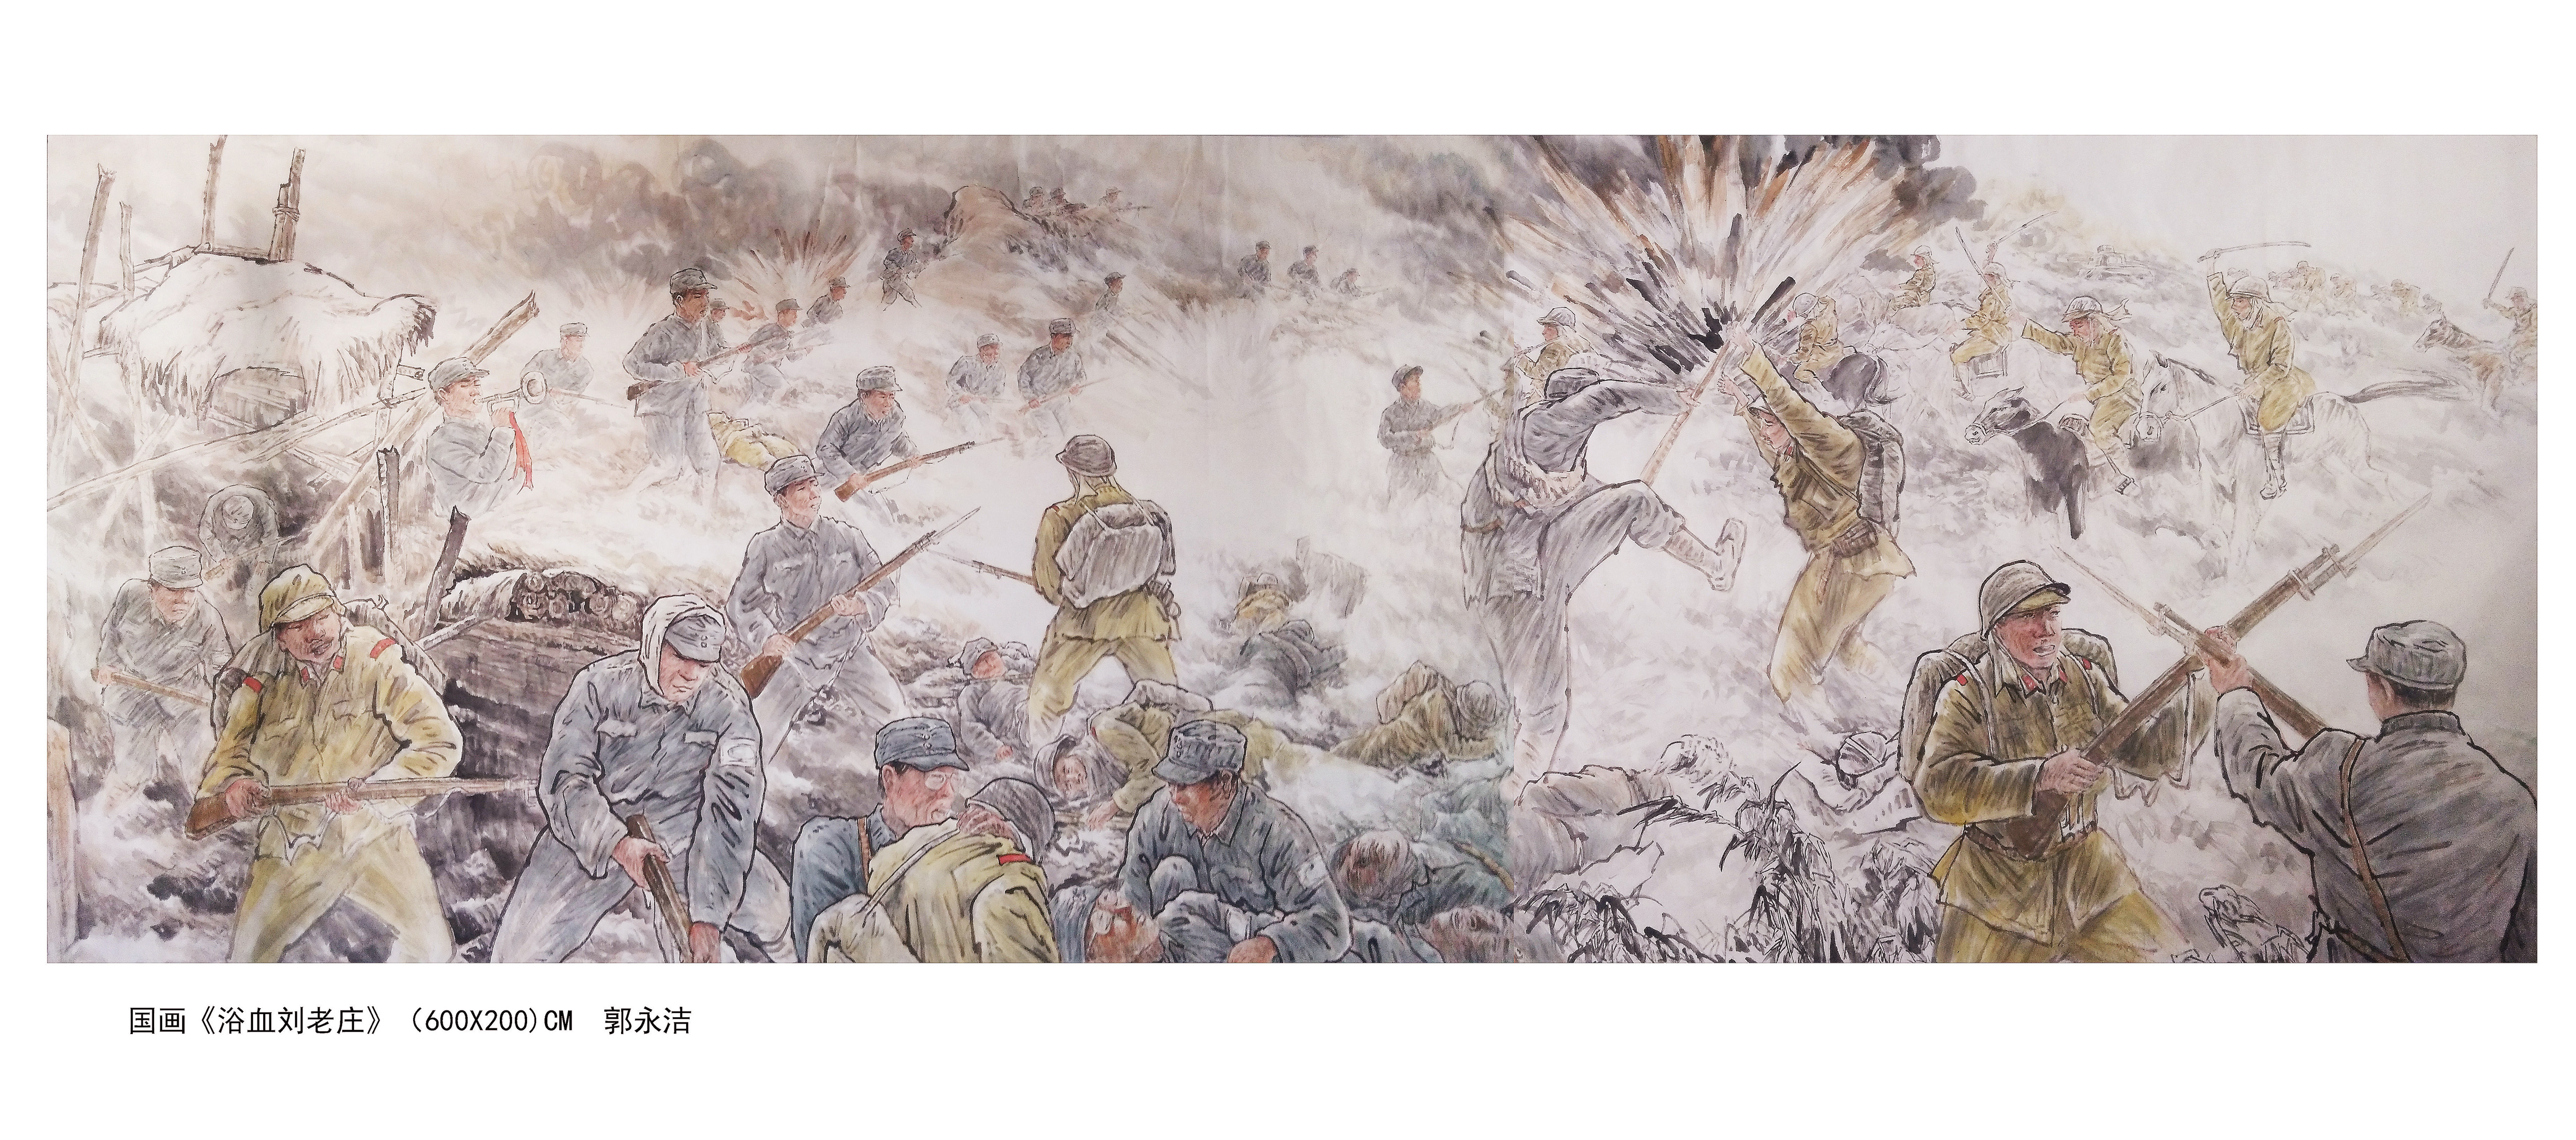 郭永潔抗戰系列國畫之一《浴血劉老莊》